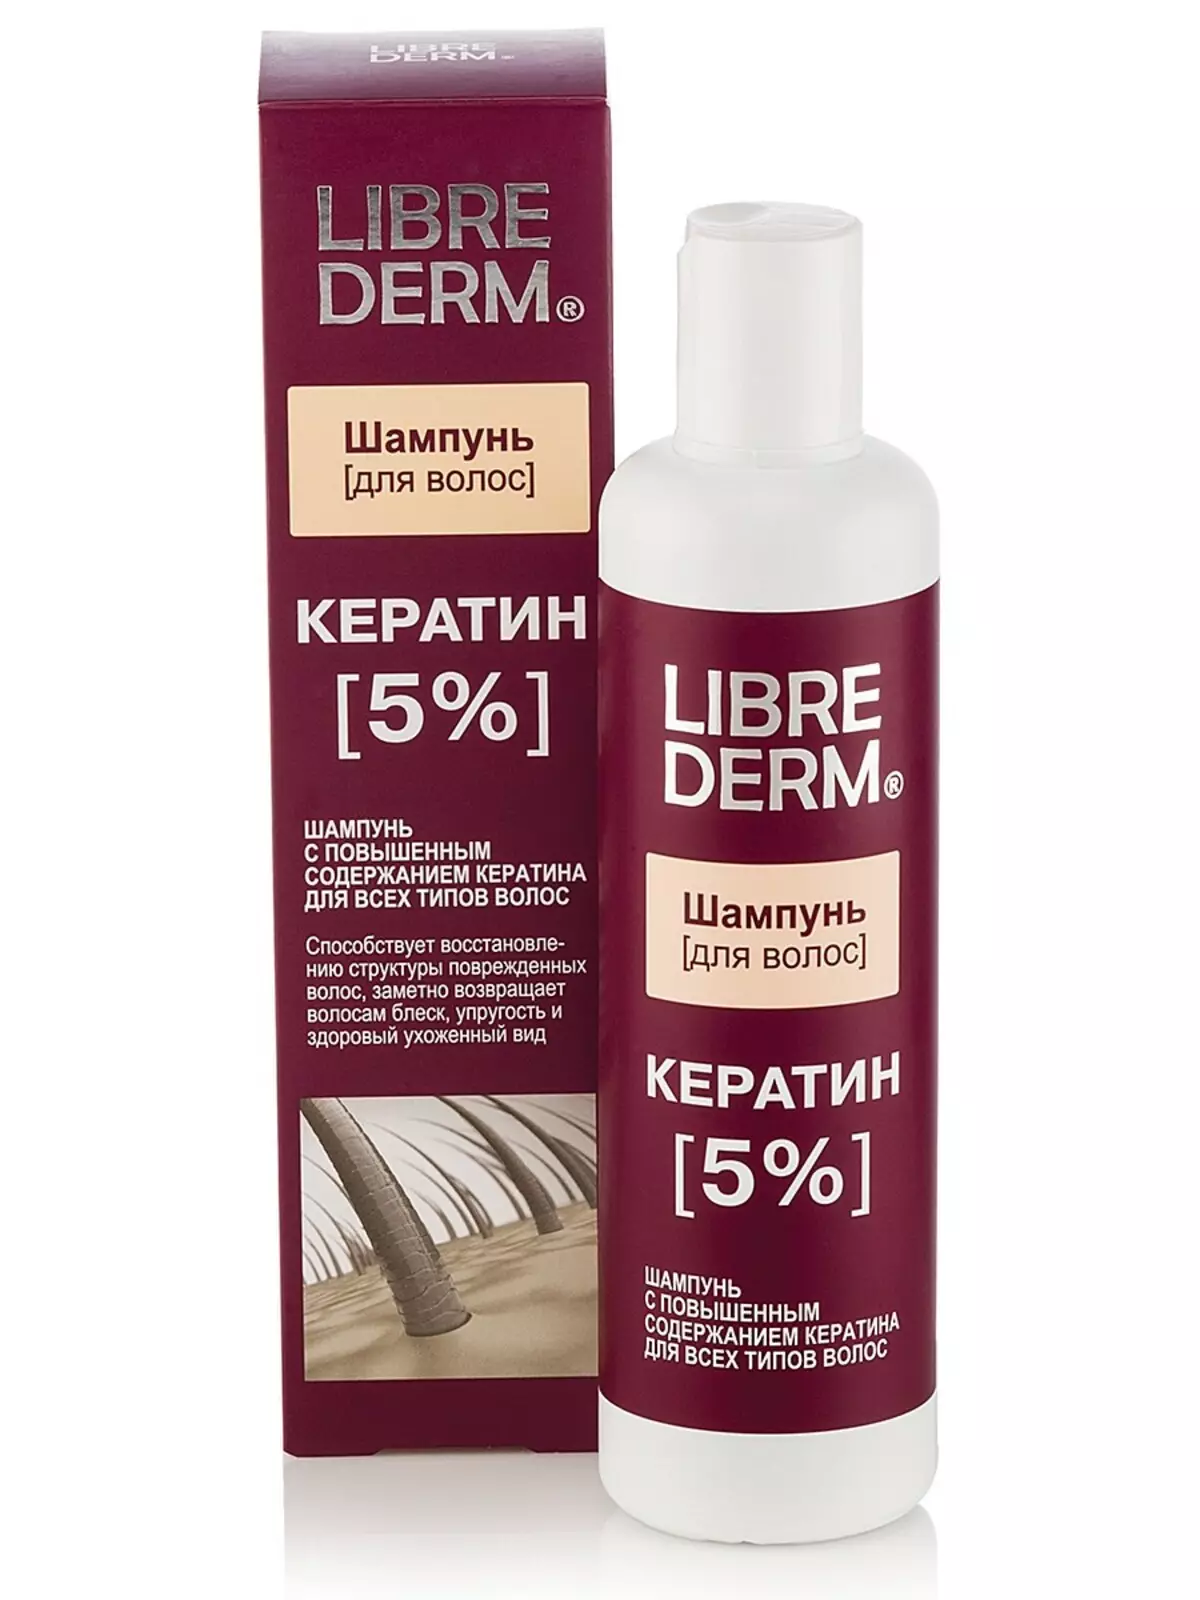 Irun straightening shampulu: Atunwo ti awọn ọjọgbọn smoothing shampoos fun gígun irun 6069_18